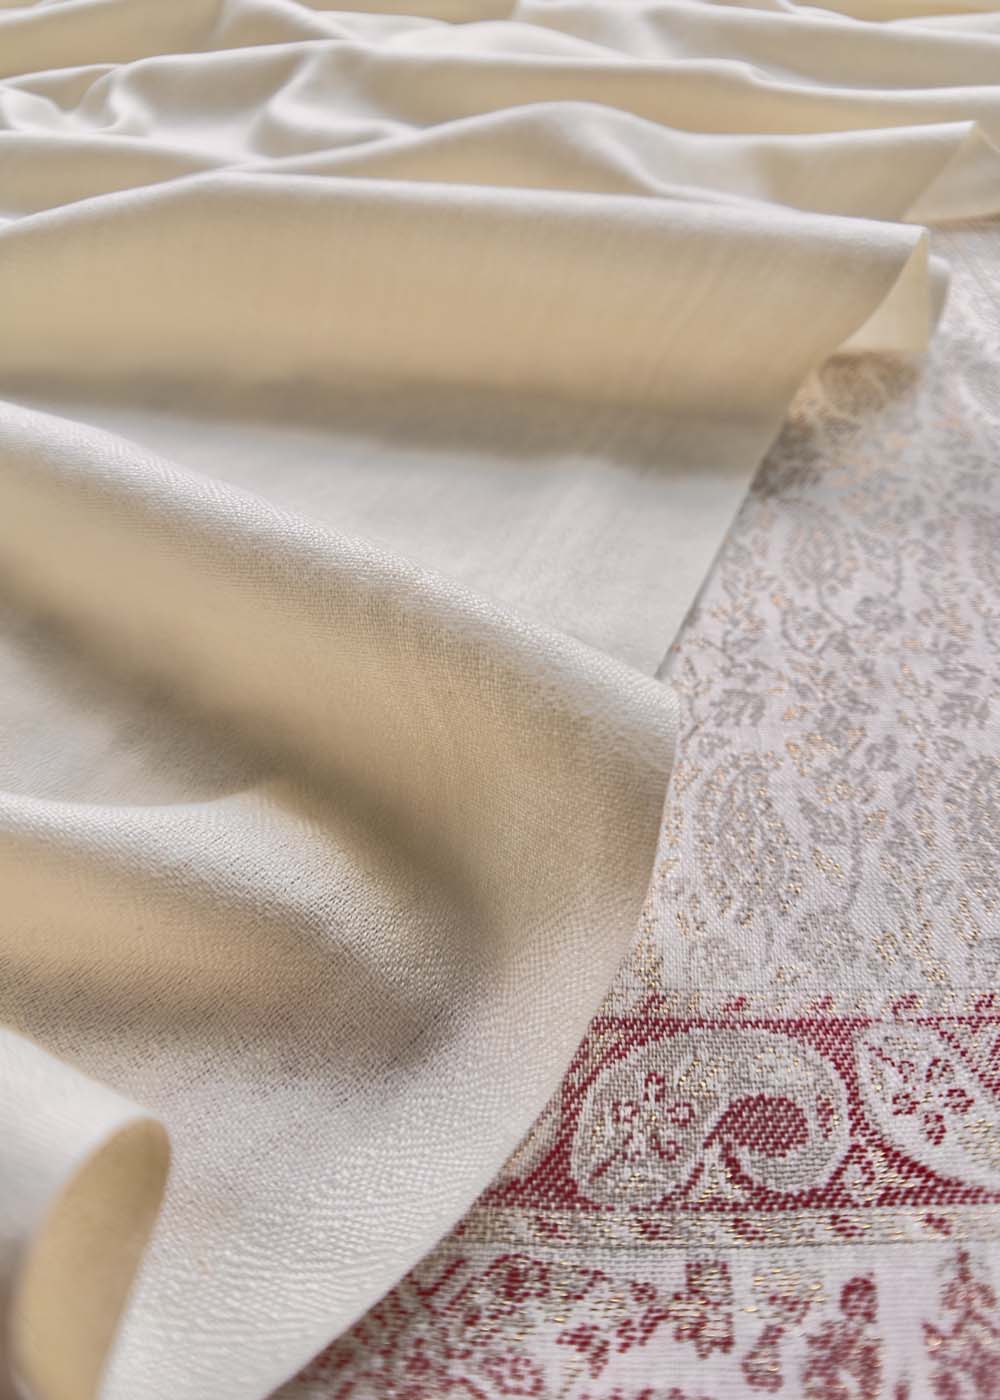 Off-White Handloom Pashmina Suit With Kani Zari Weaving – Kalasheel